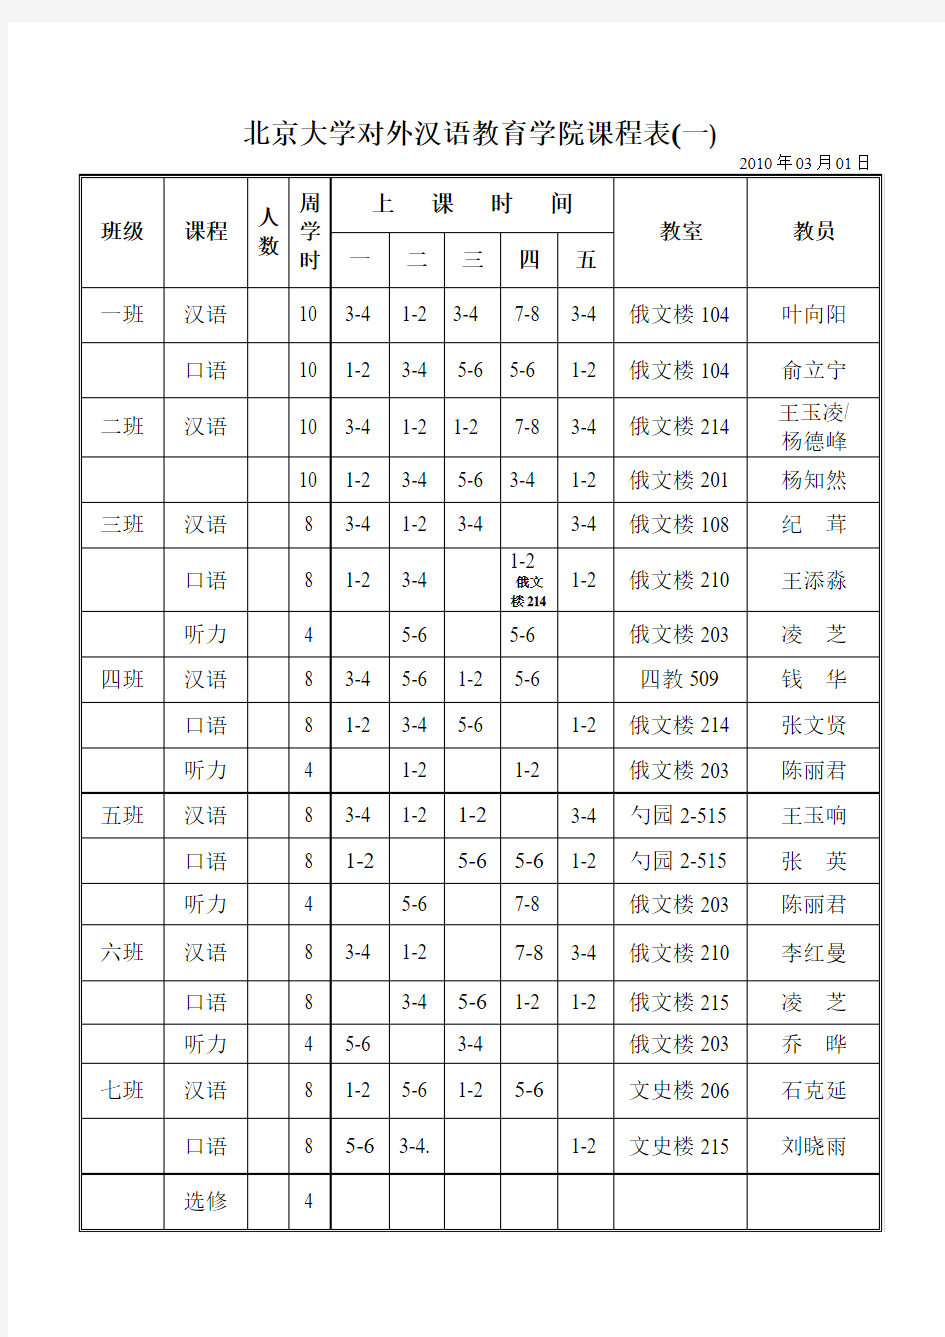 北京大学对外汉语教育学院课程表(一)